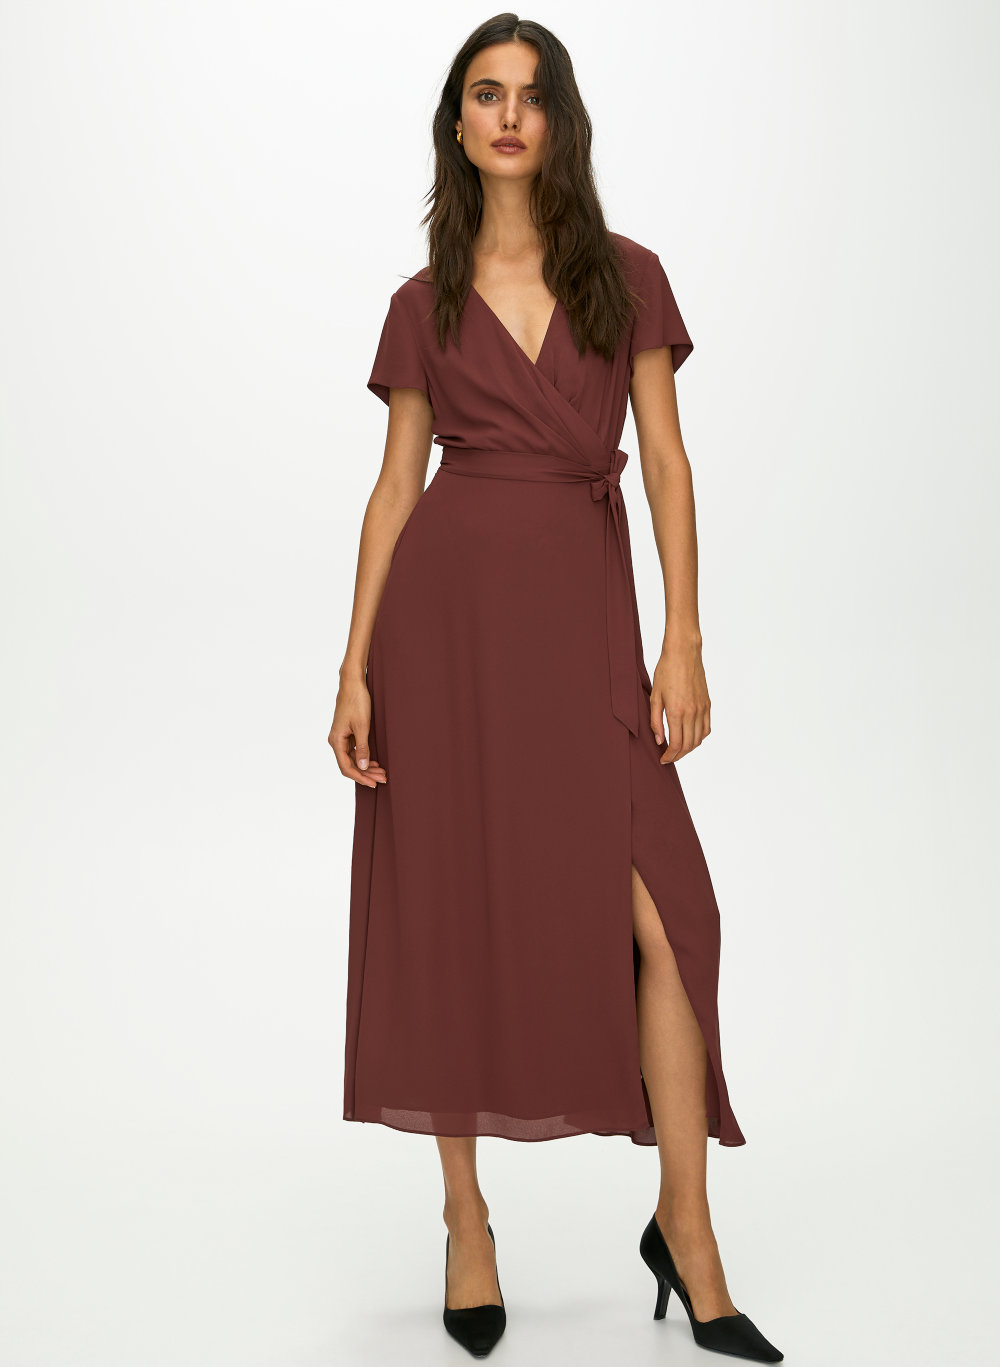 aritzia burgundy dress